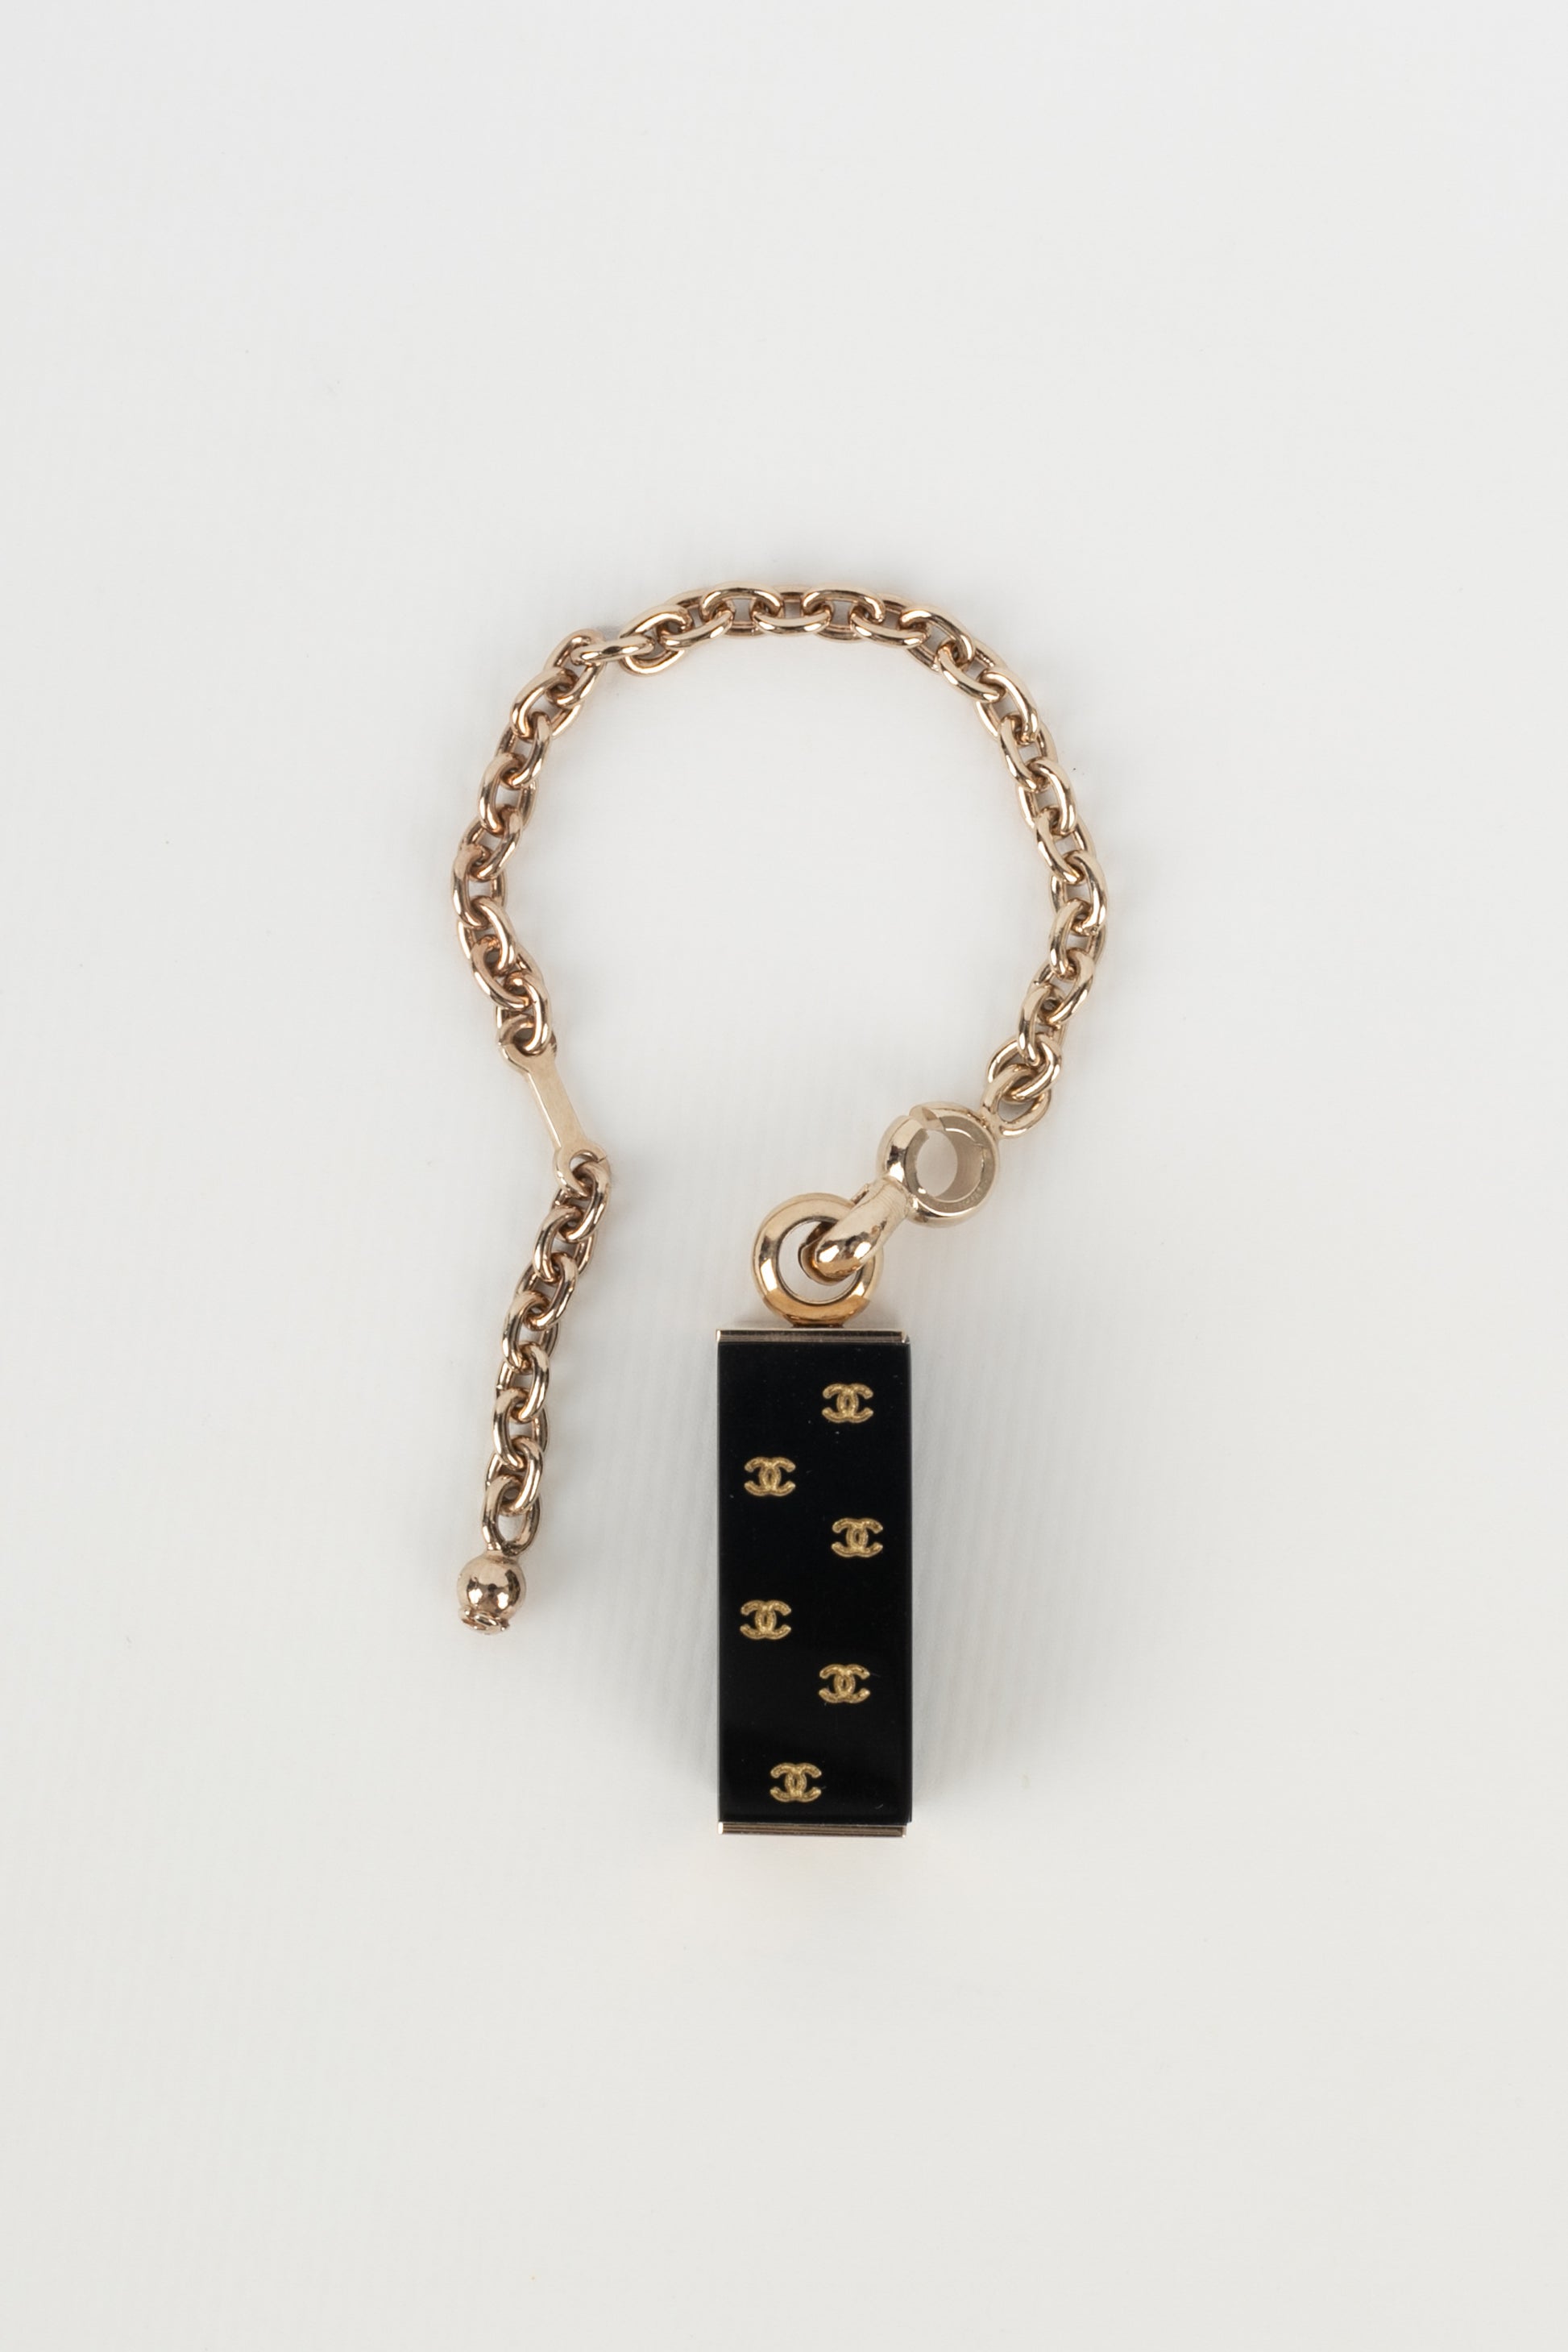 Porte-clés Chanel